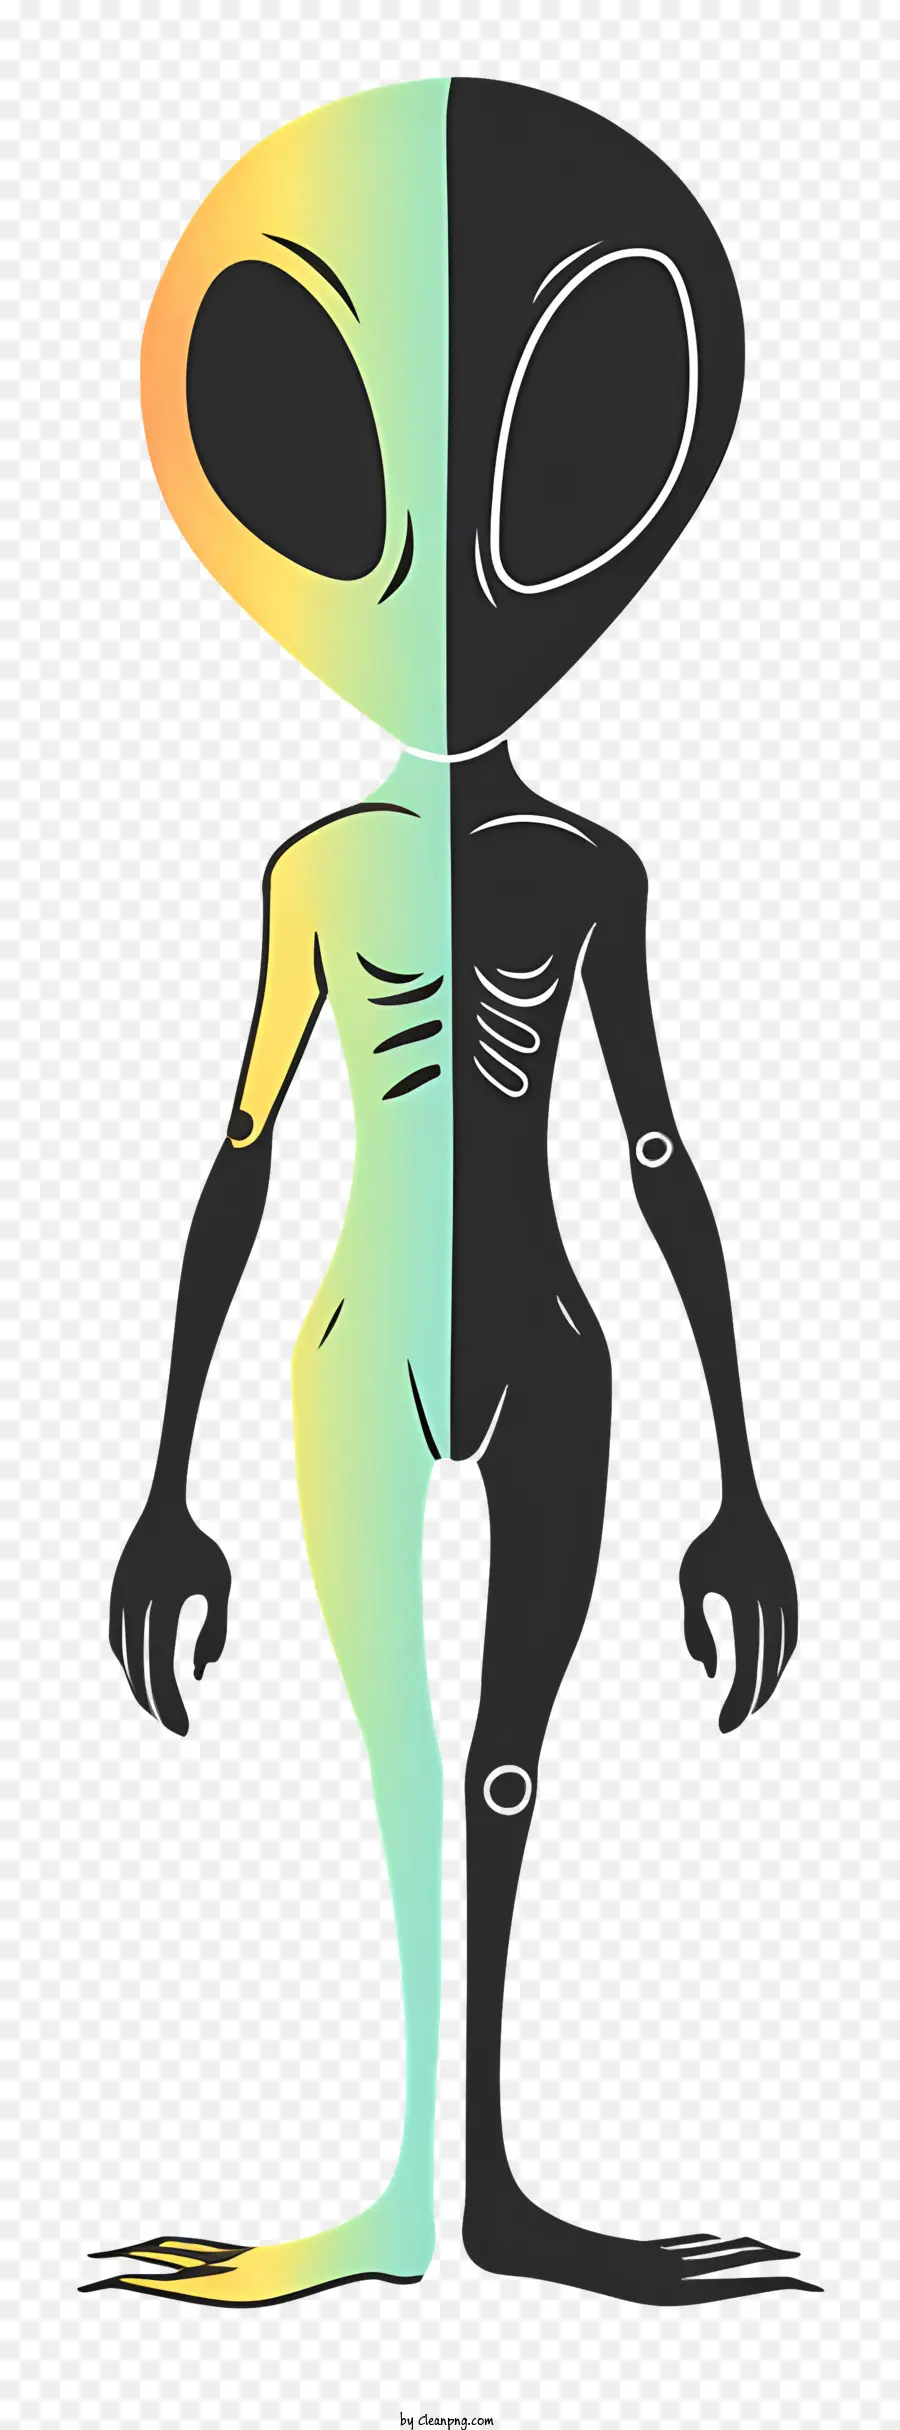 Alien hominid außerirdischer Charakter großer Kopf langer Arme und Beine kleiner Oberkörper - Fremd mit bunten Haut trägt Hemd und Schal